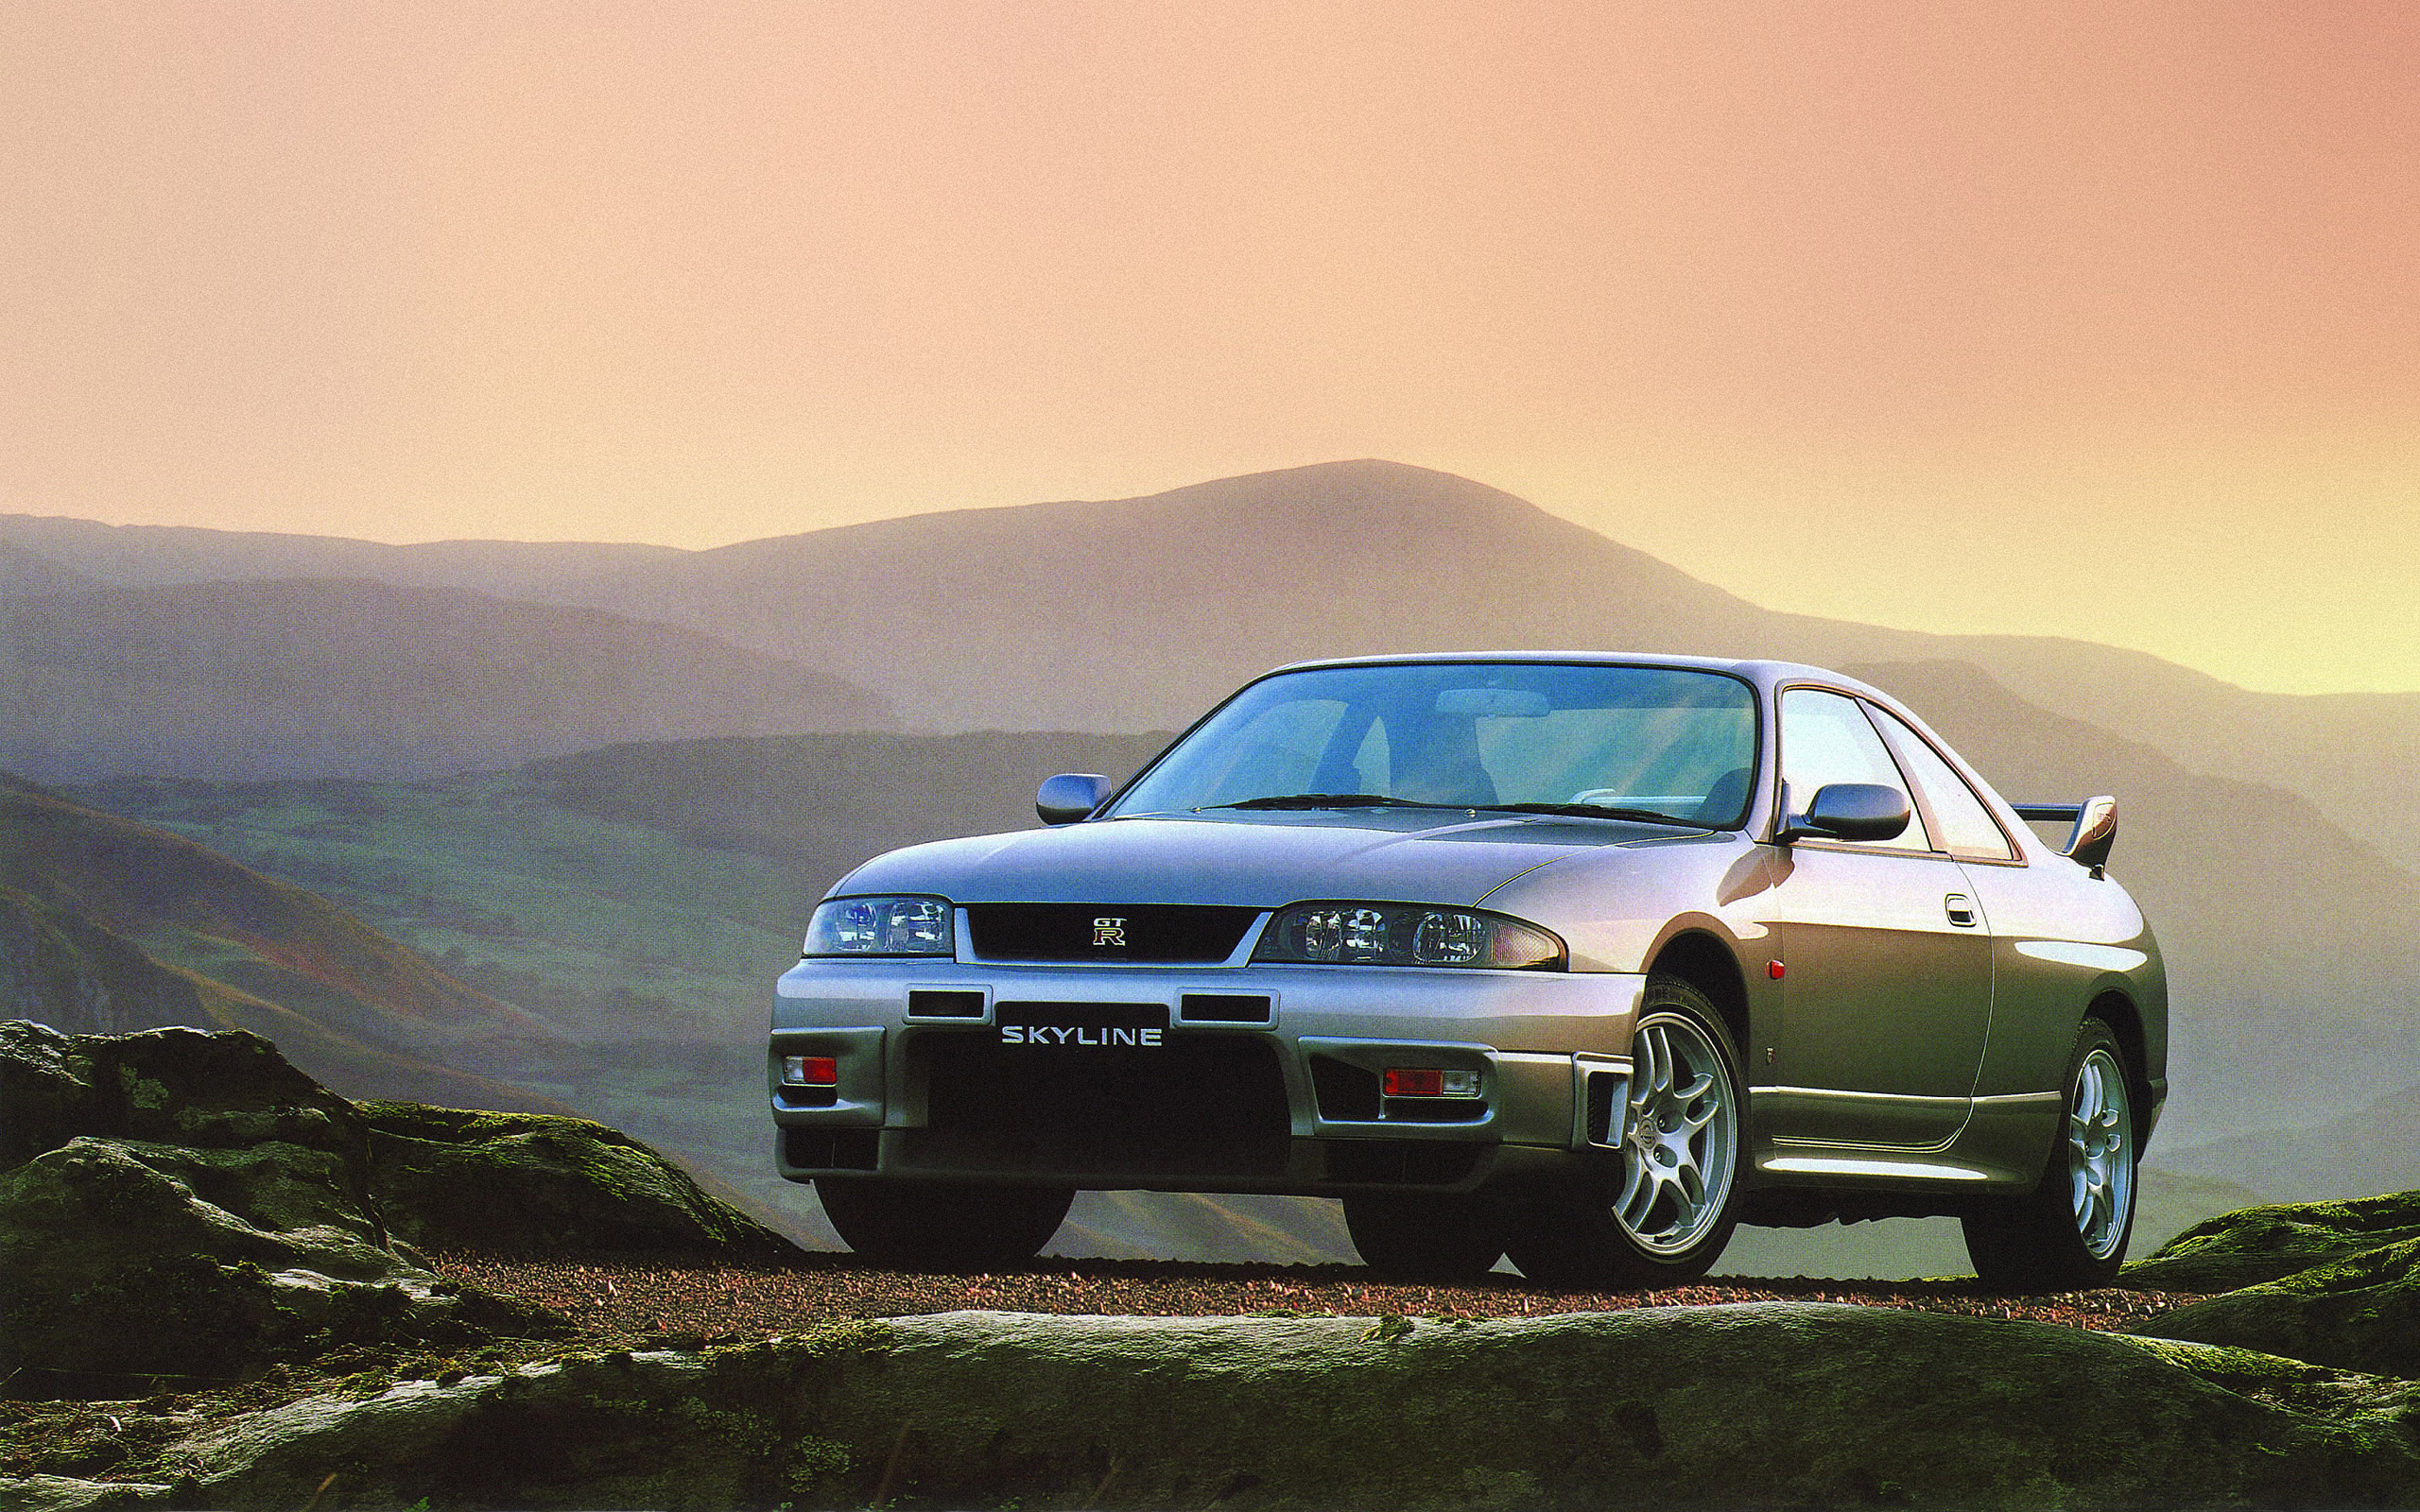  1996 Nissan Skyline GT-R V-spec Wallpaper.